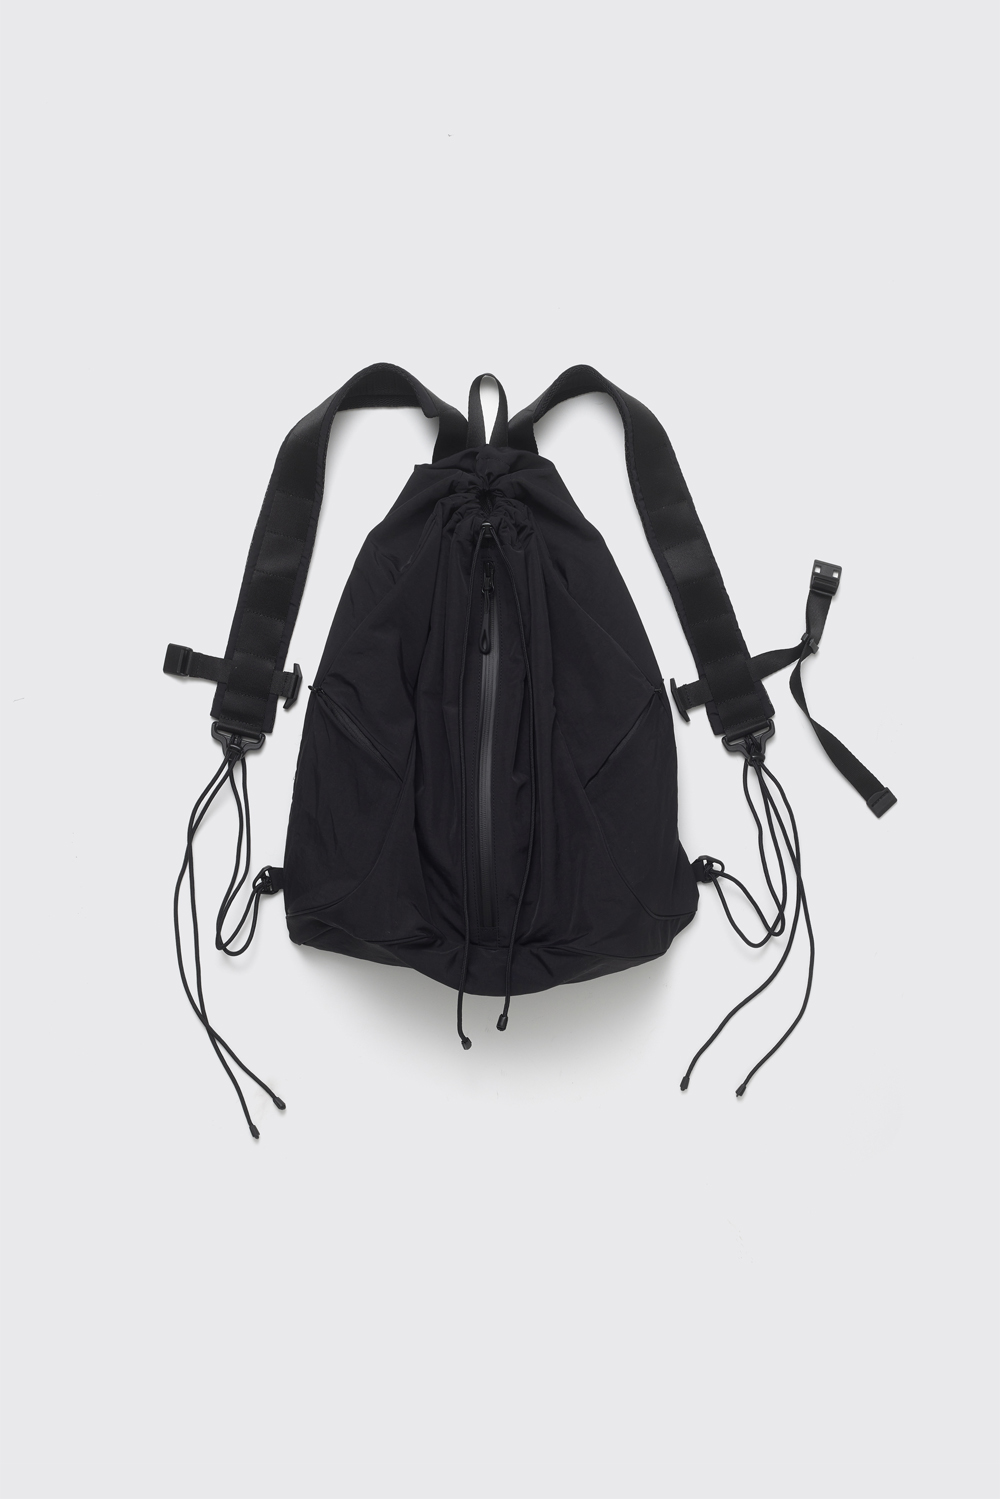 String Backpack Nylon Black (3rd Restock)